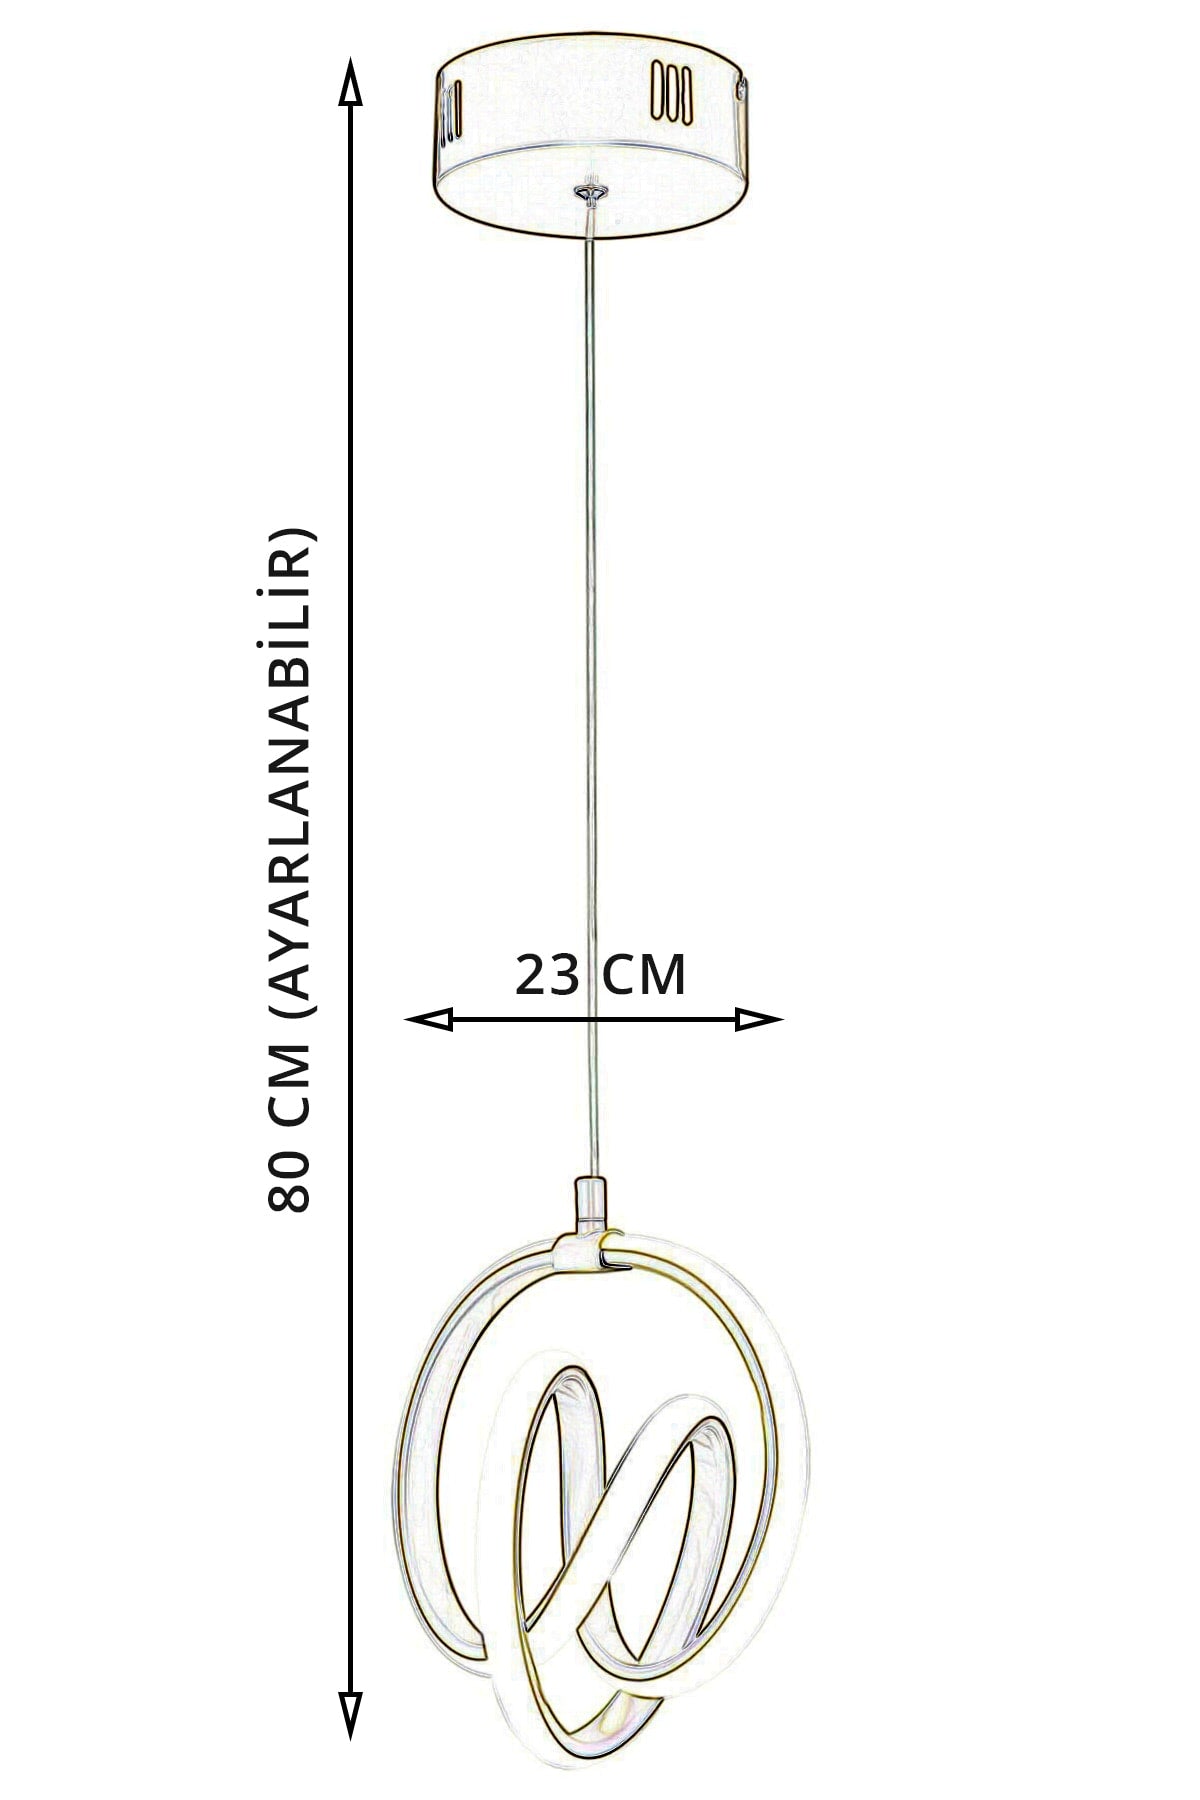 Venita Antique Modern Pendant Lamp LED Chandelier Living Room Kitchen Room LED Chandelier